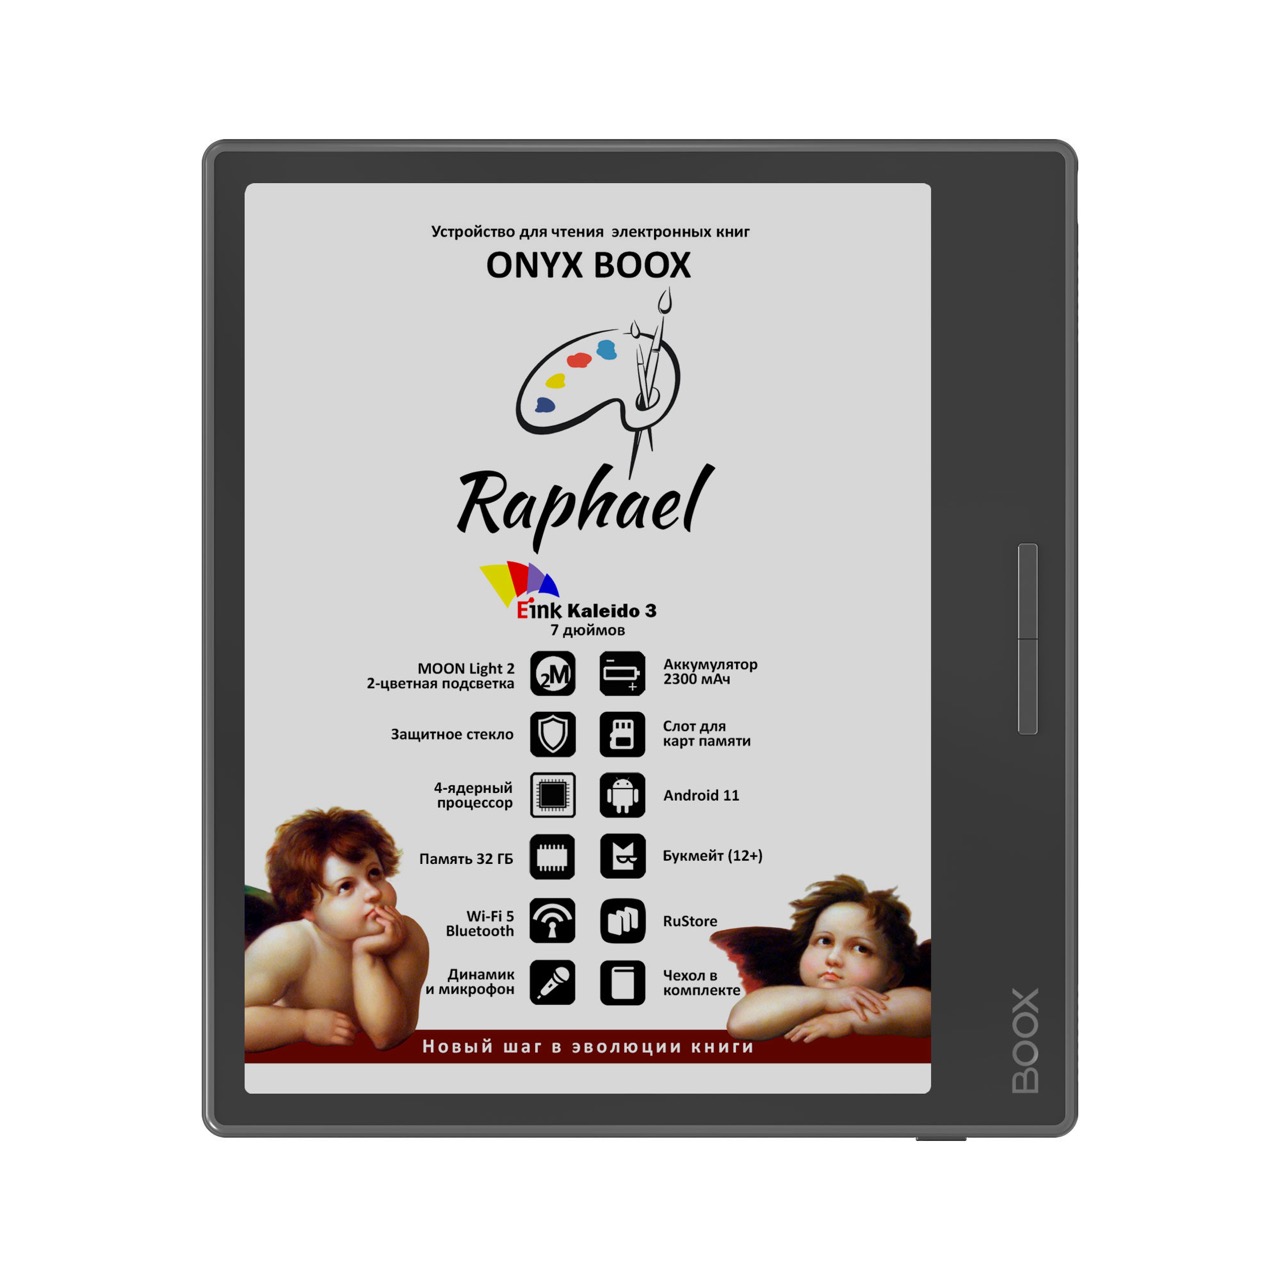 ONYX BOOX Raphael — новый цветной ридер с хорошим размером